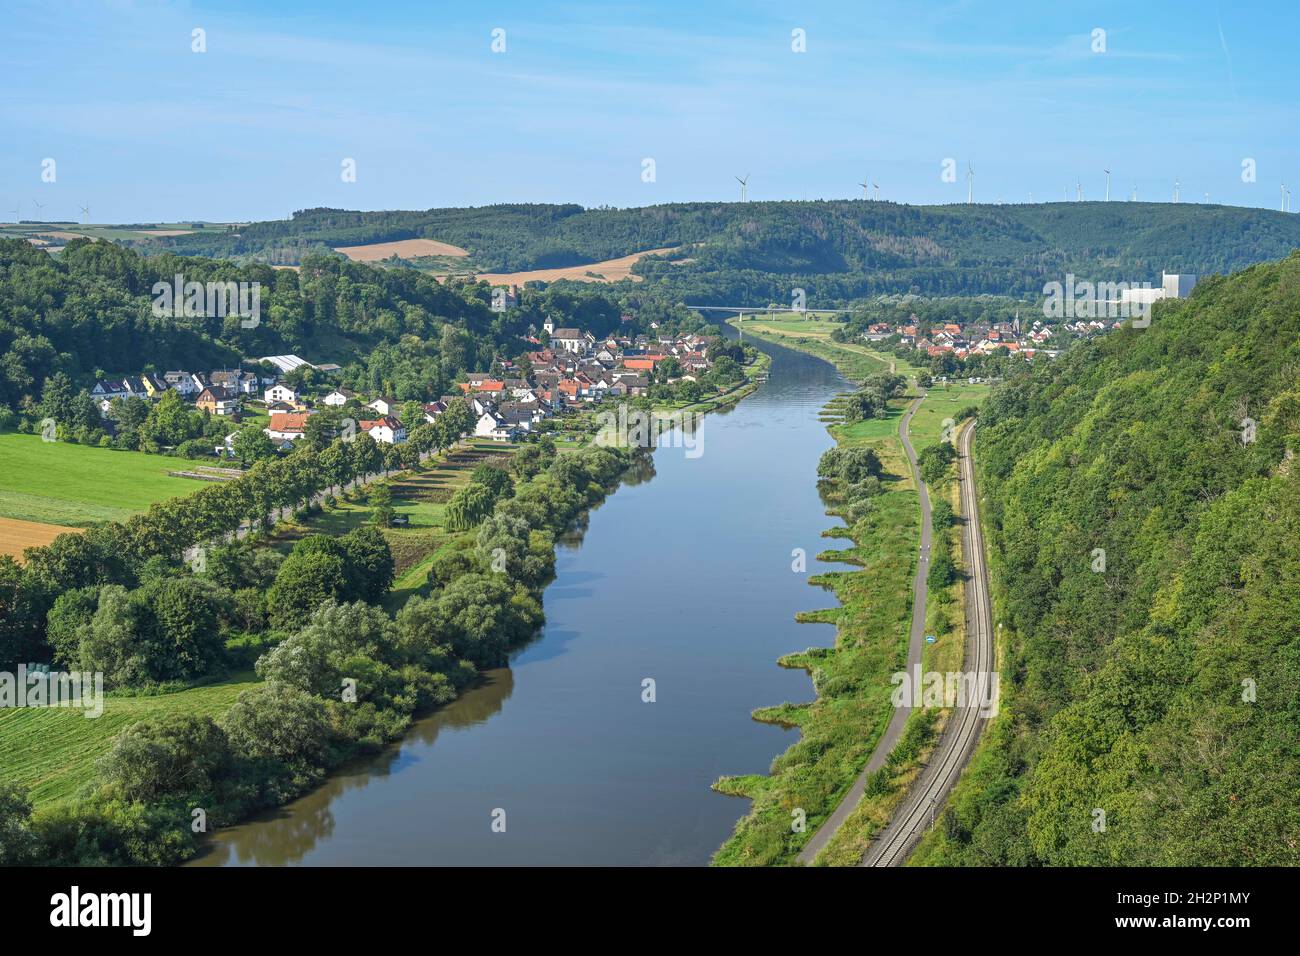 Blick in das Wesertal vom Weser-Skywalk Richtung Würgassen, Beverungen, Nordrhein-Westfalen, Allemagne Banque D'Images